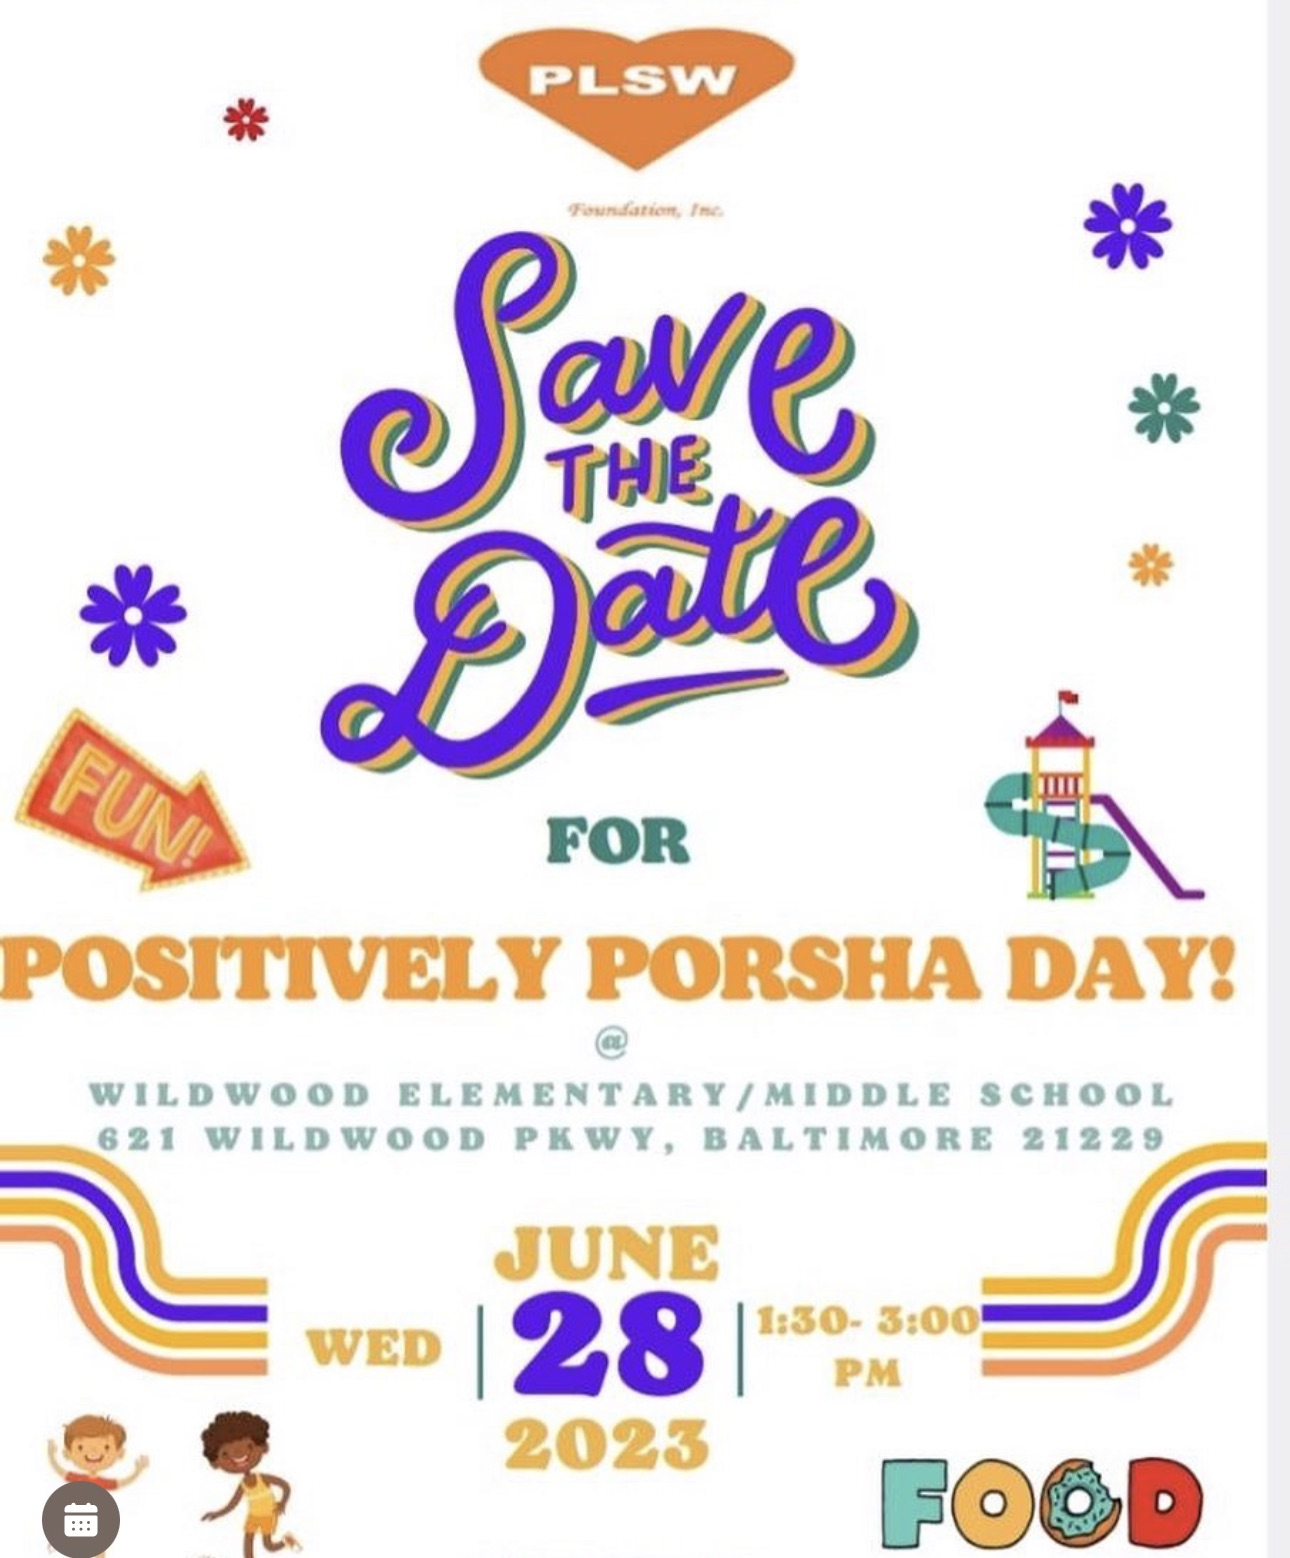 Positively Porsha Day 2023